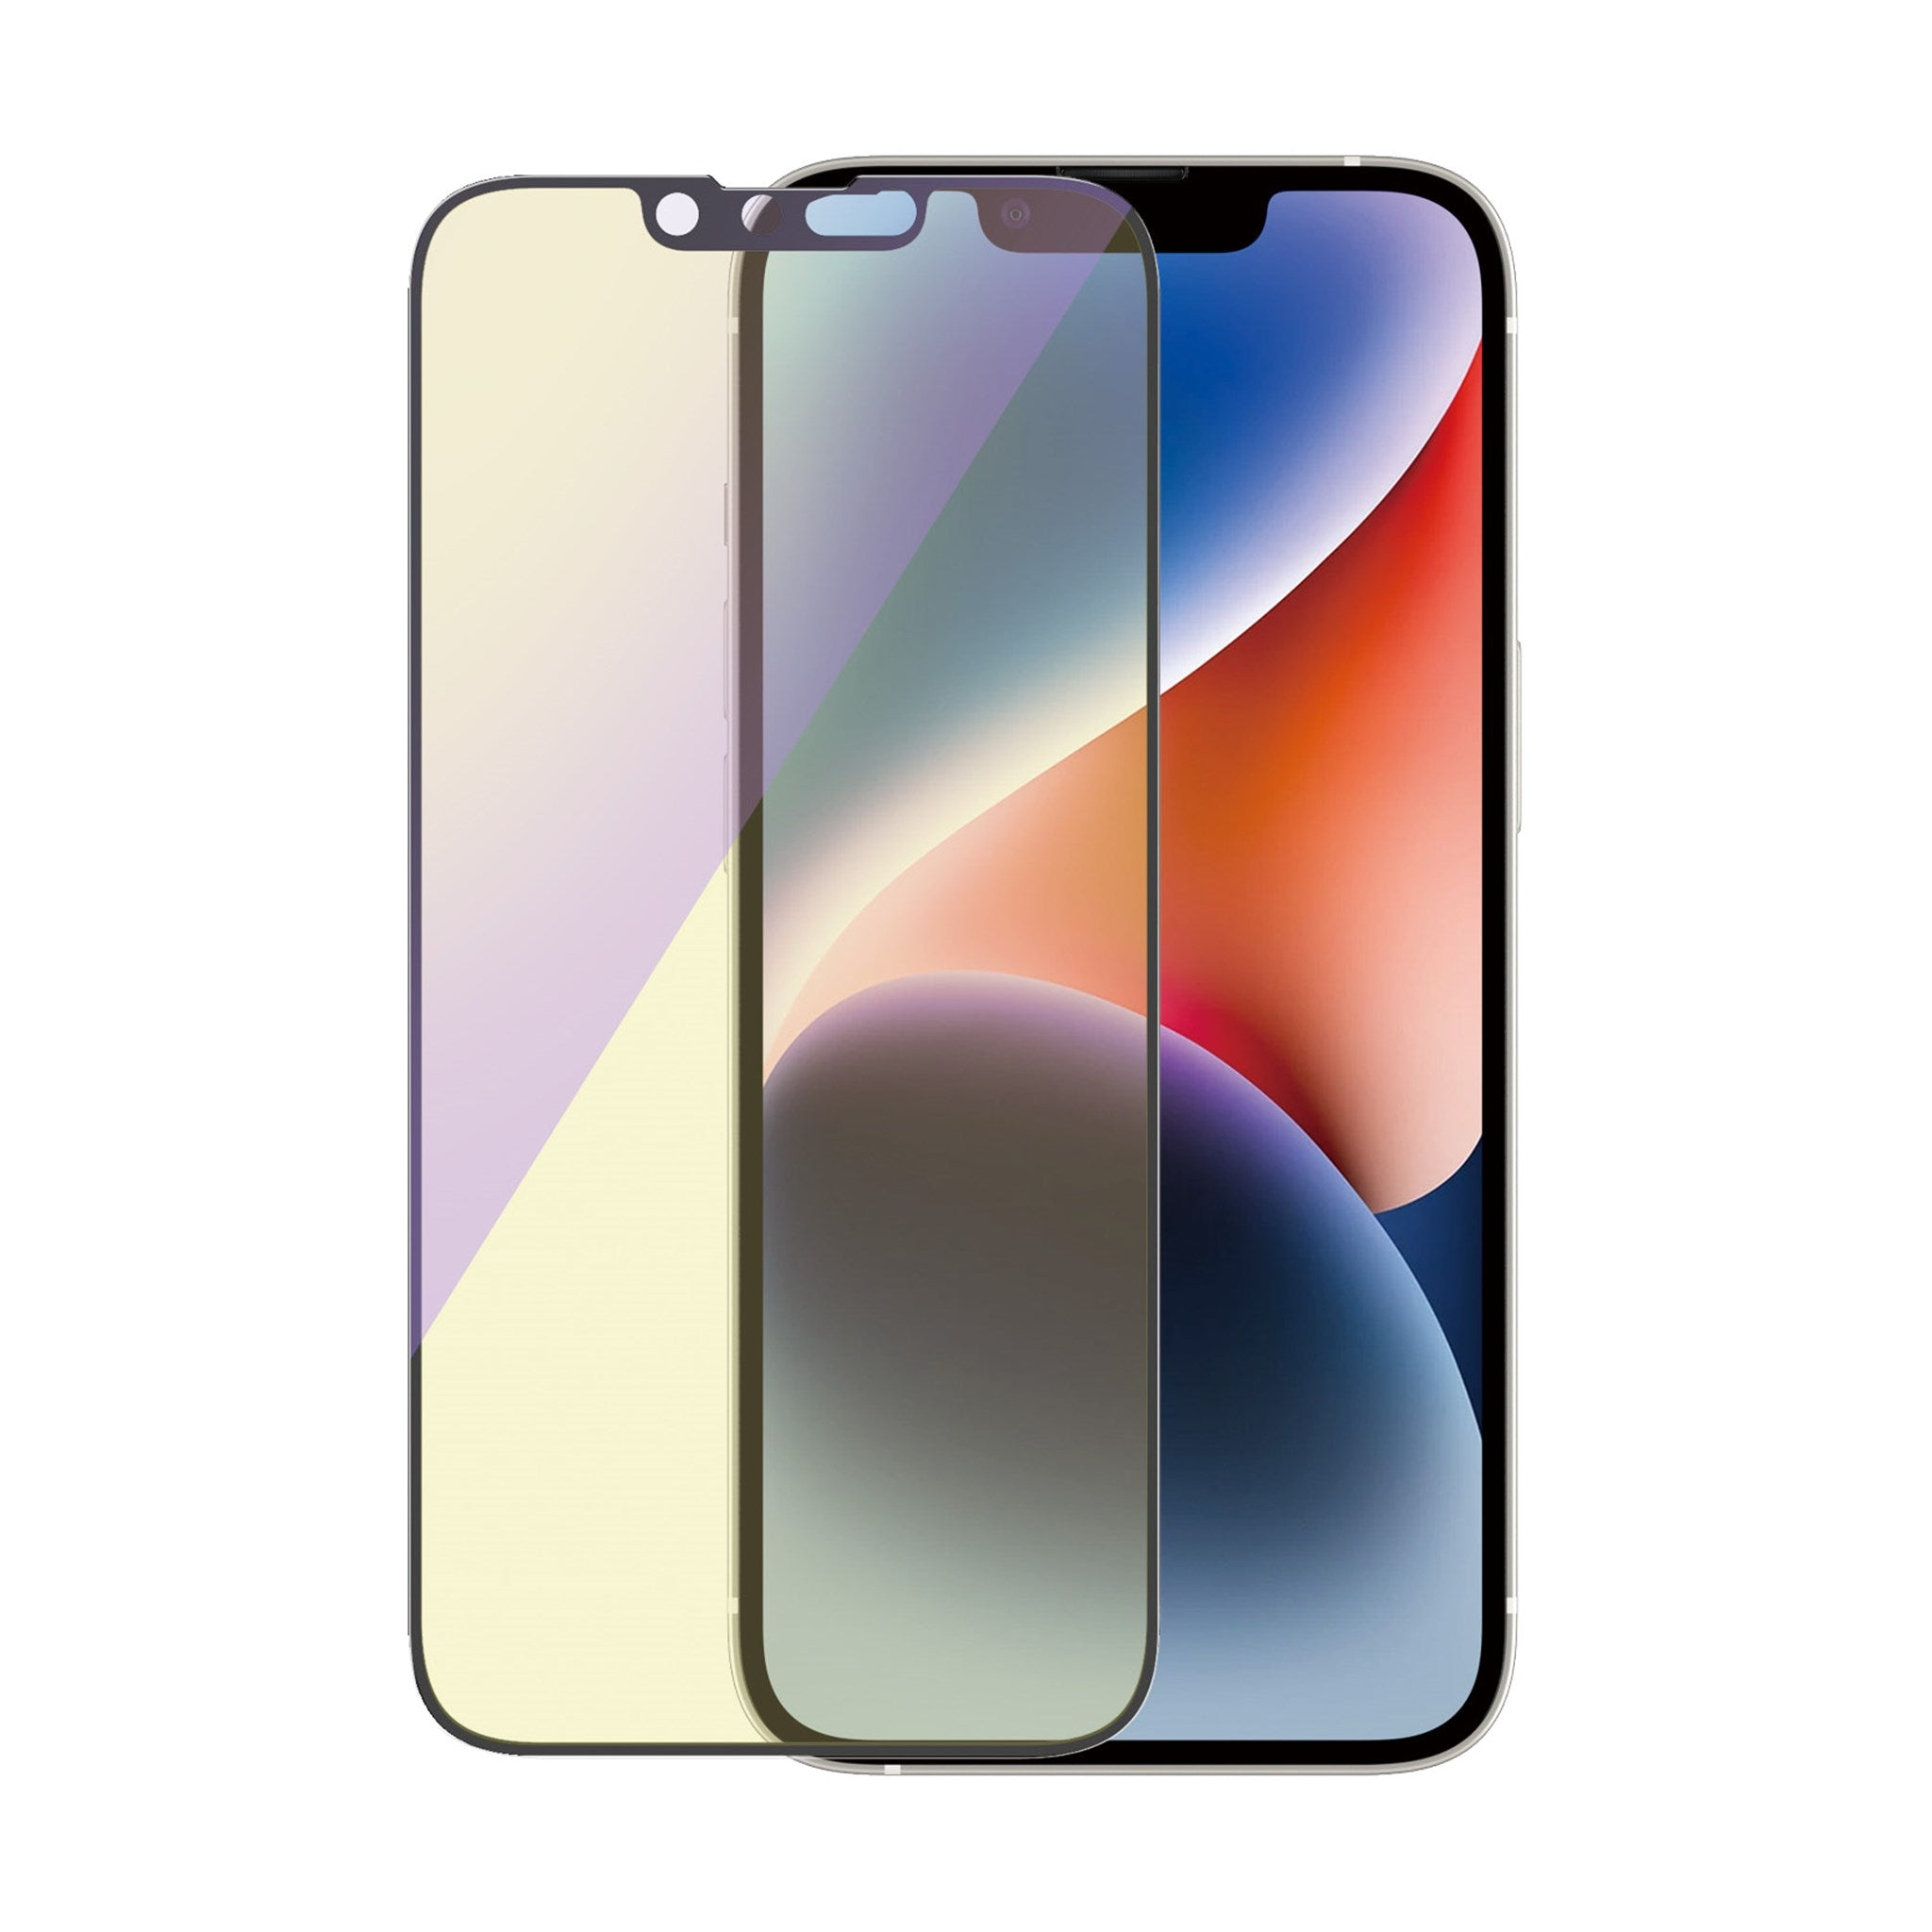 PANZERGLASS Ultra-Wide Fit iPhone Displayschutz(für Apple Pro) 13 13 14